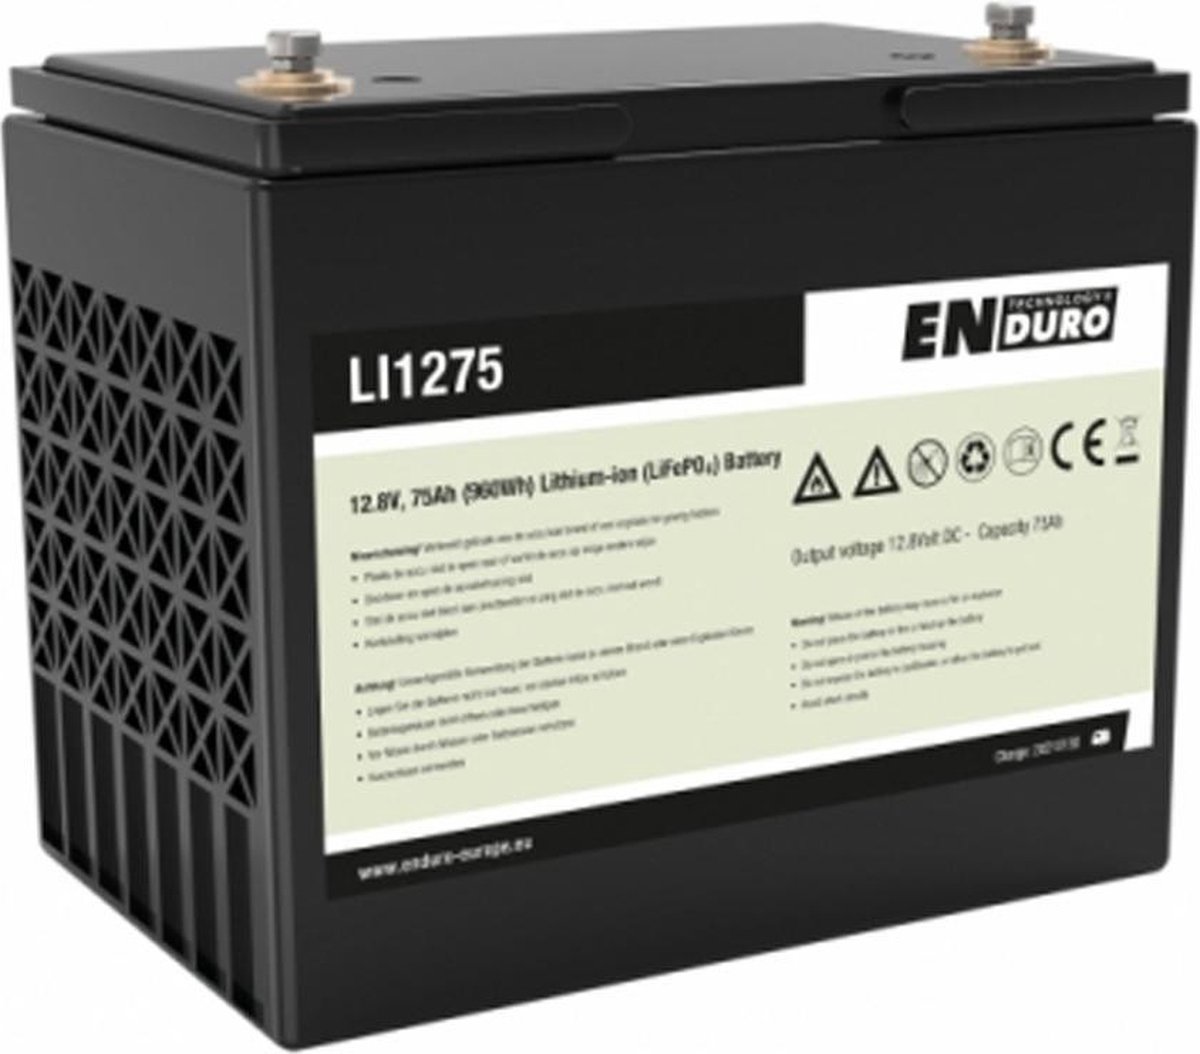 Enduro Lithium Accu Buscamper Bluetooth LI1275